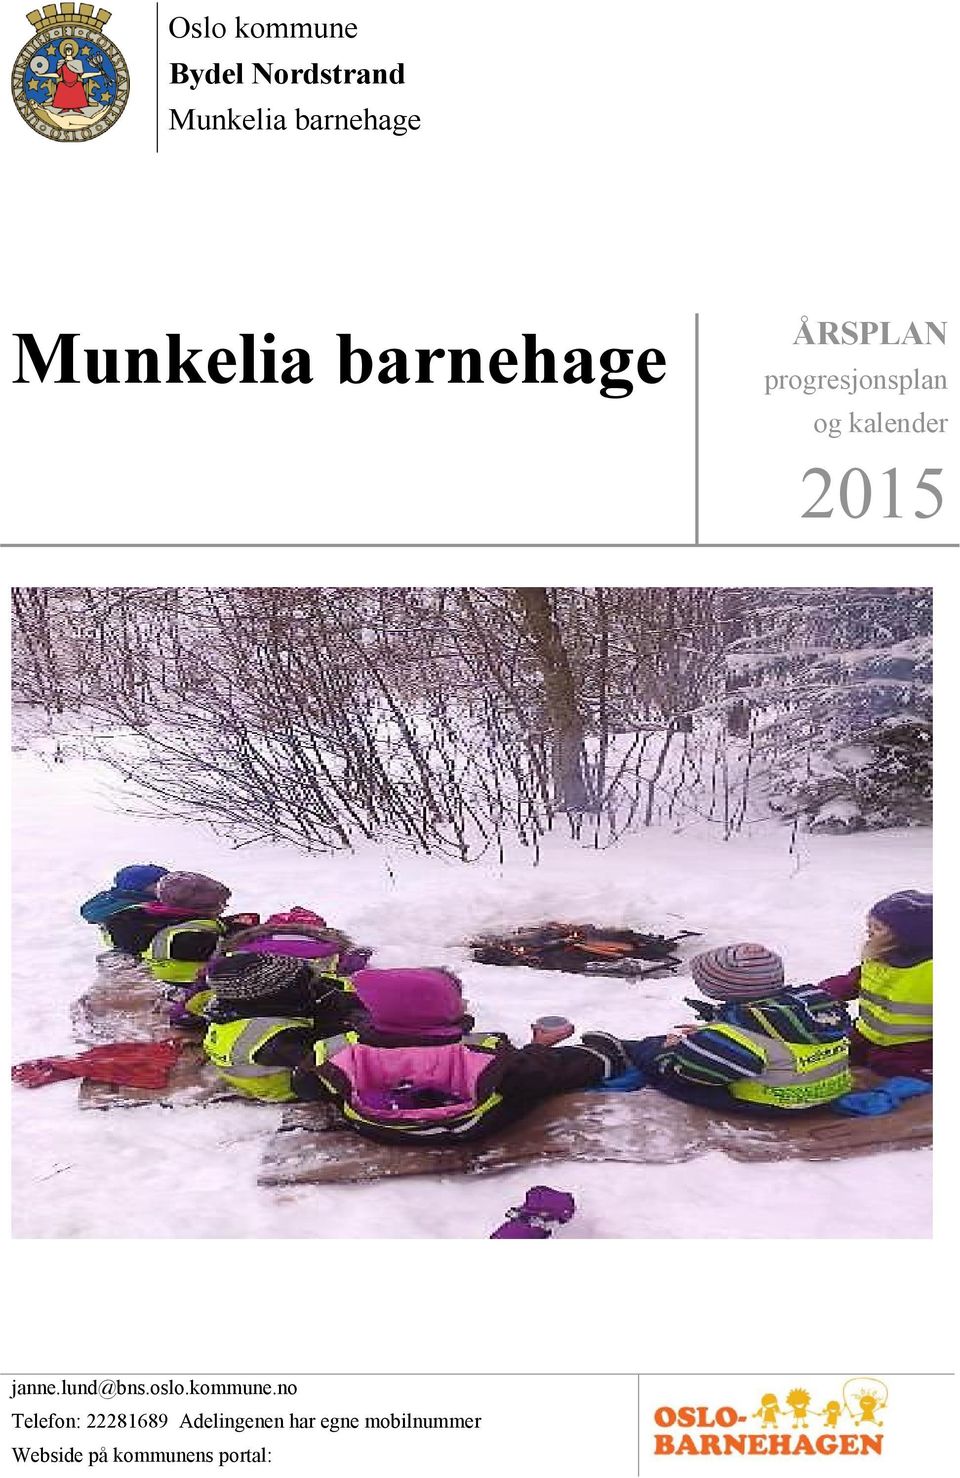 2015 janne.lund@bns.oslo.kommune.